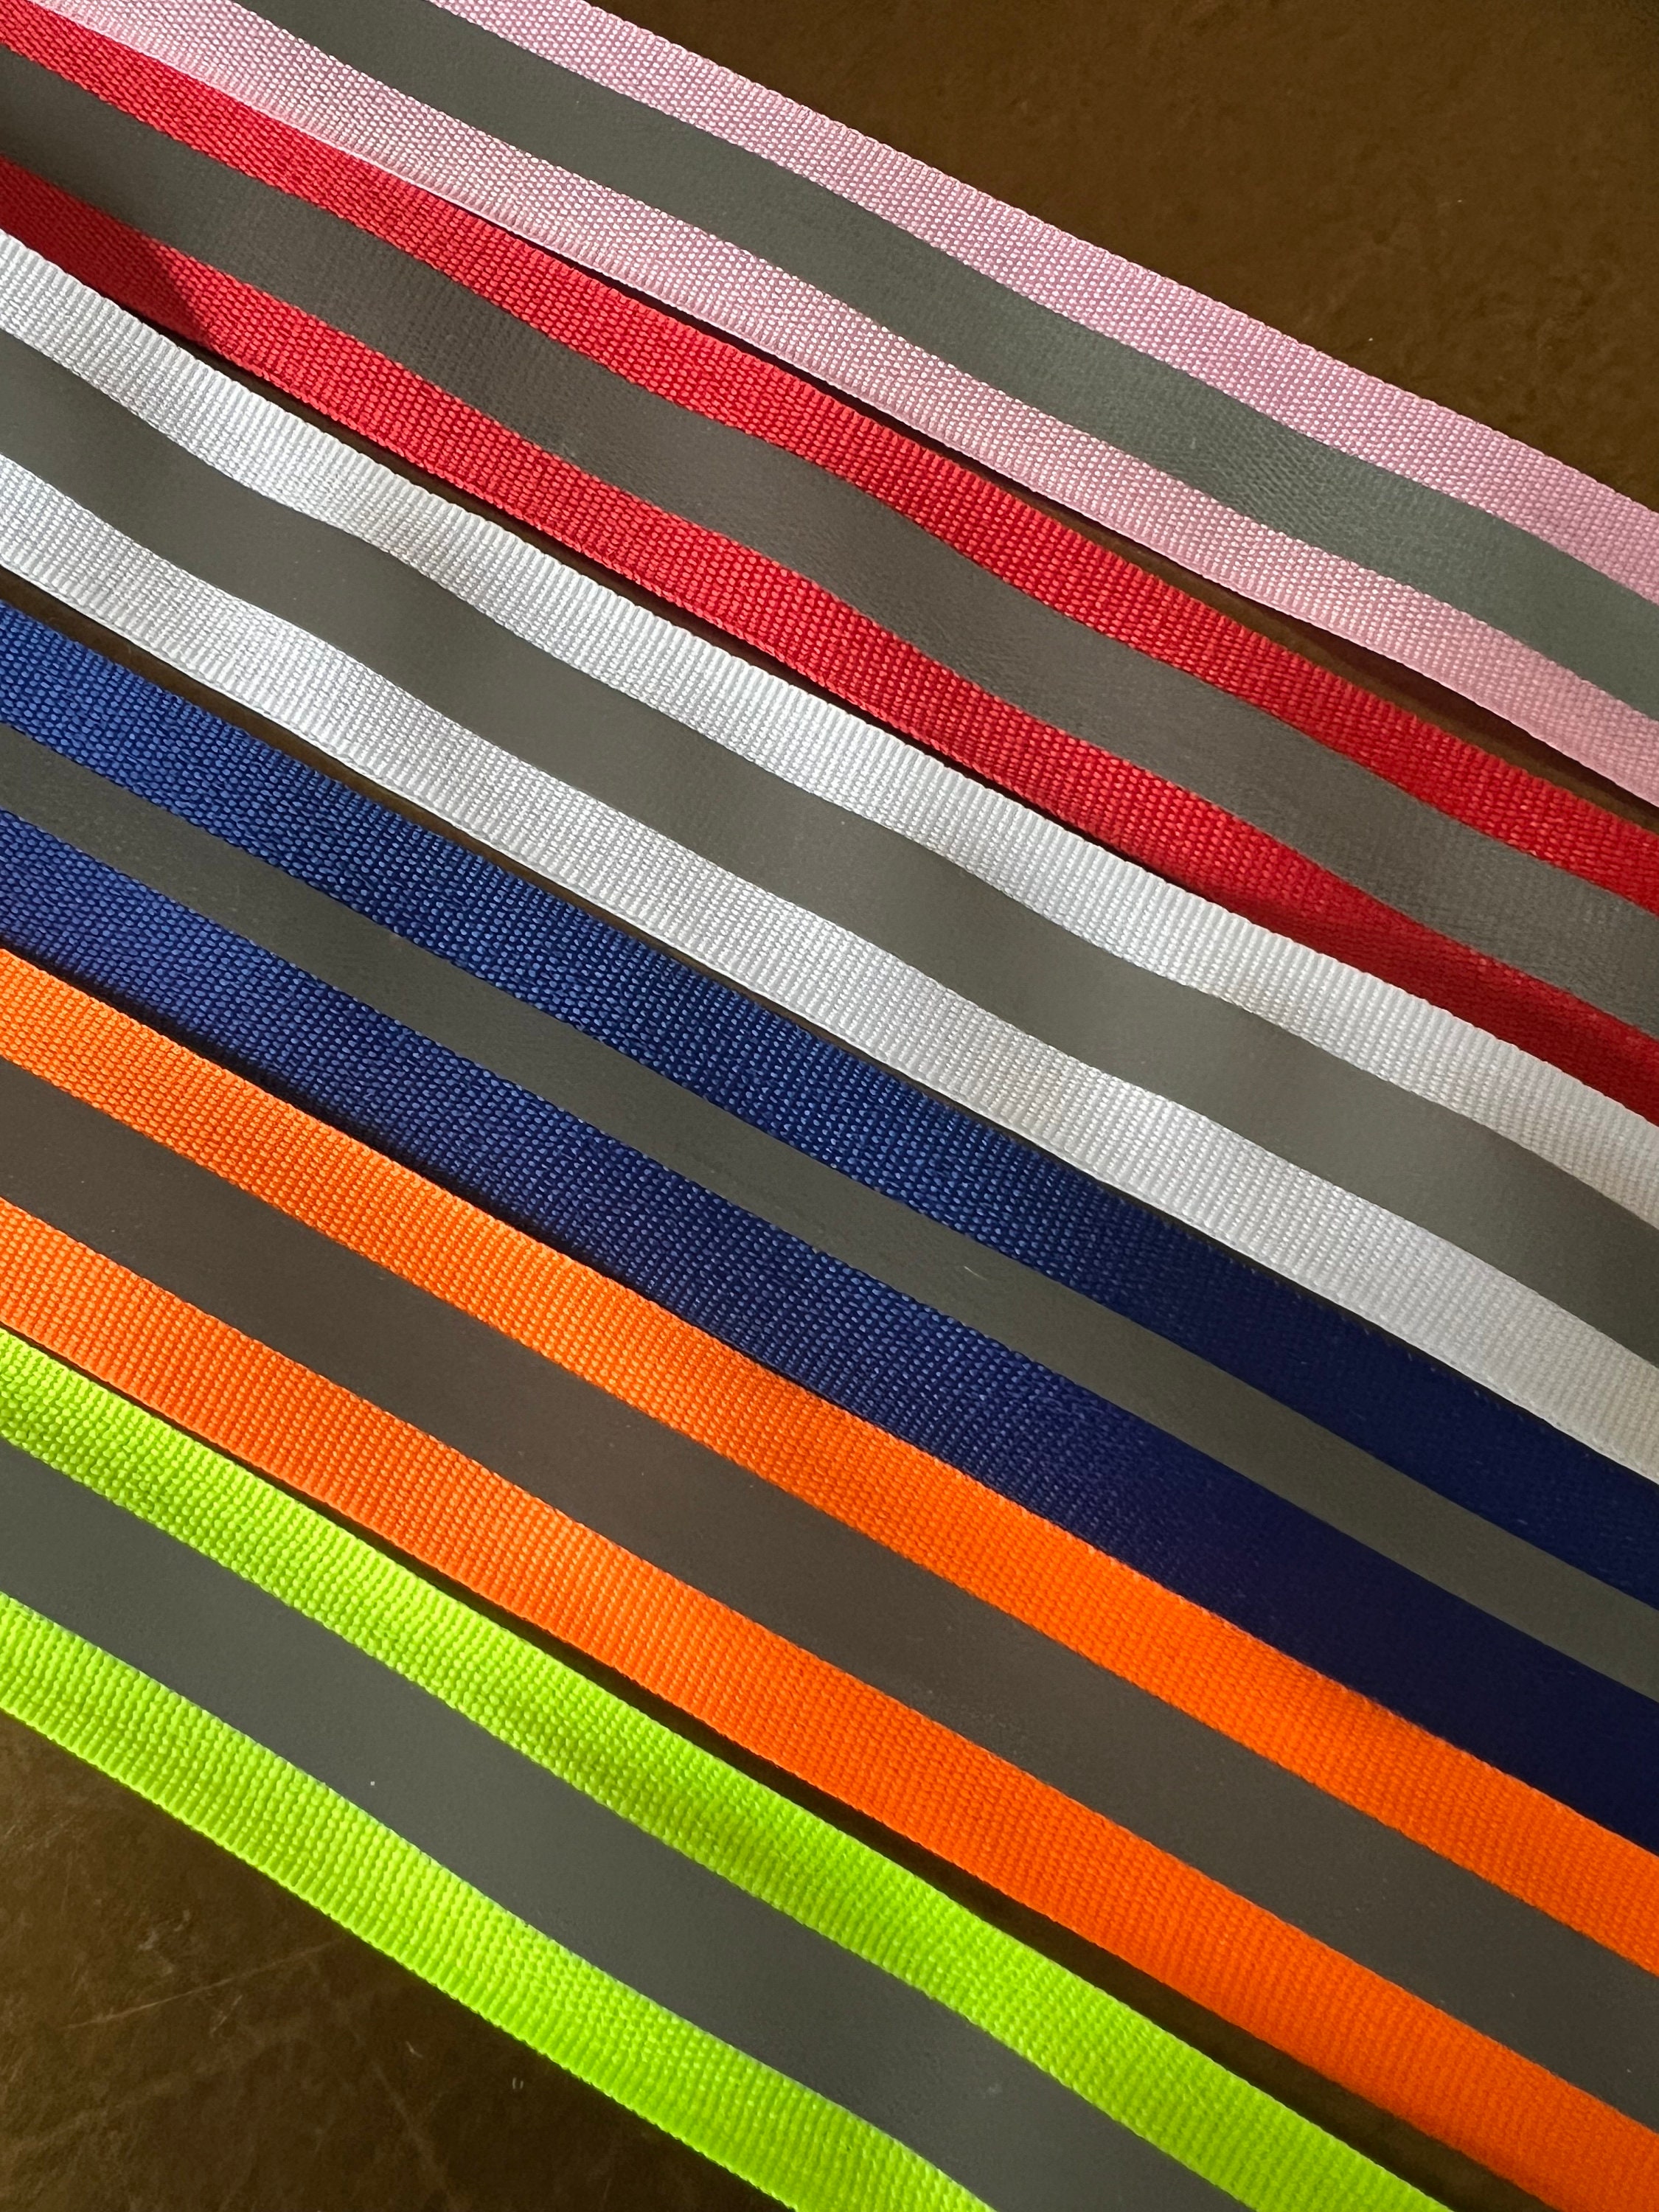 Stelle adesive riflettenti scotchlite 3M in vari colori Colore - Nero